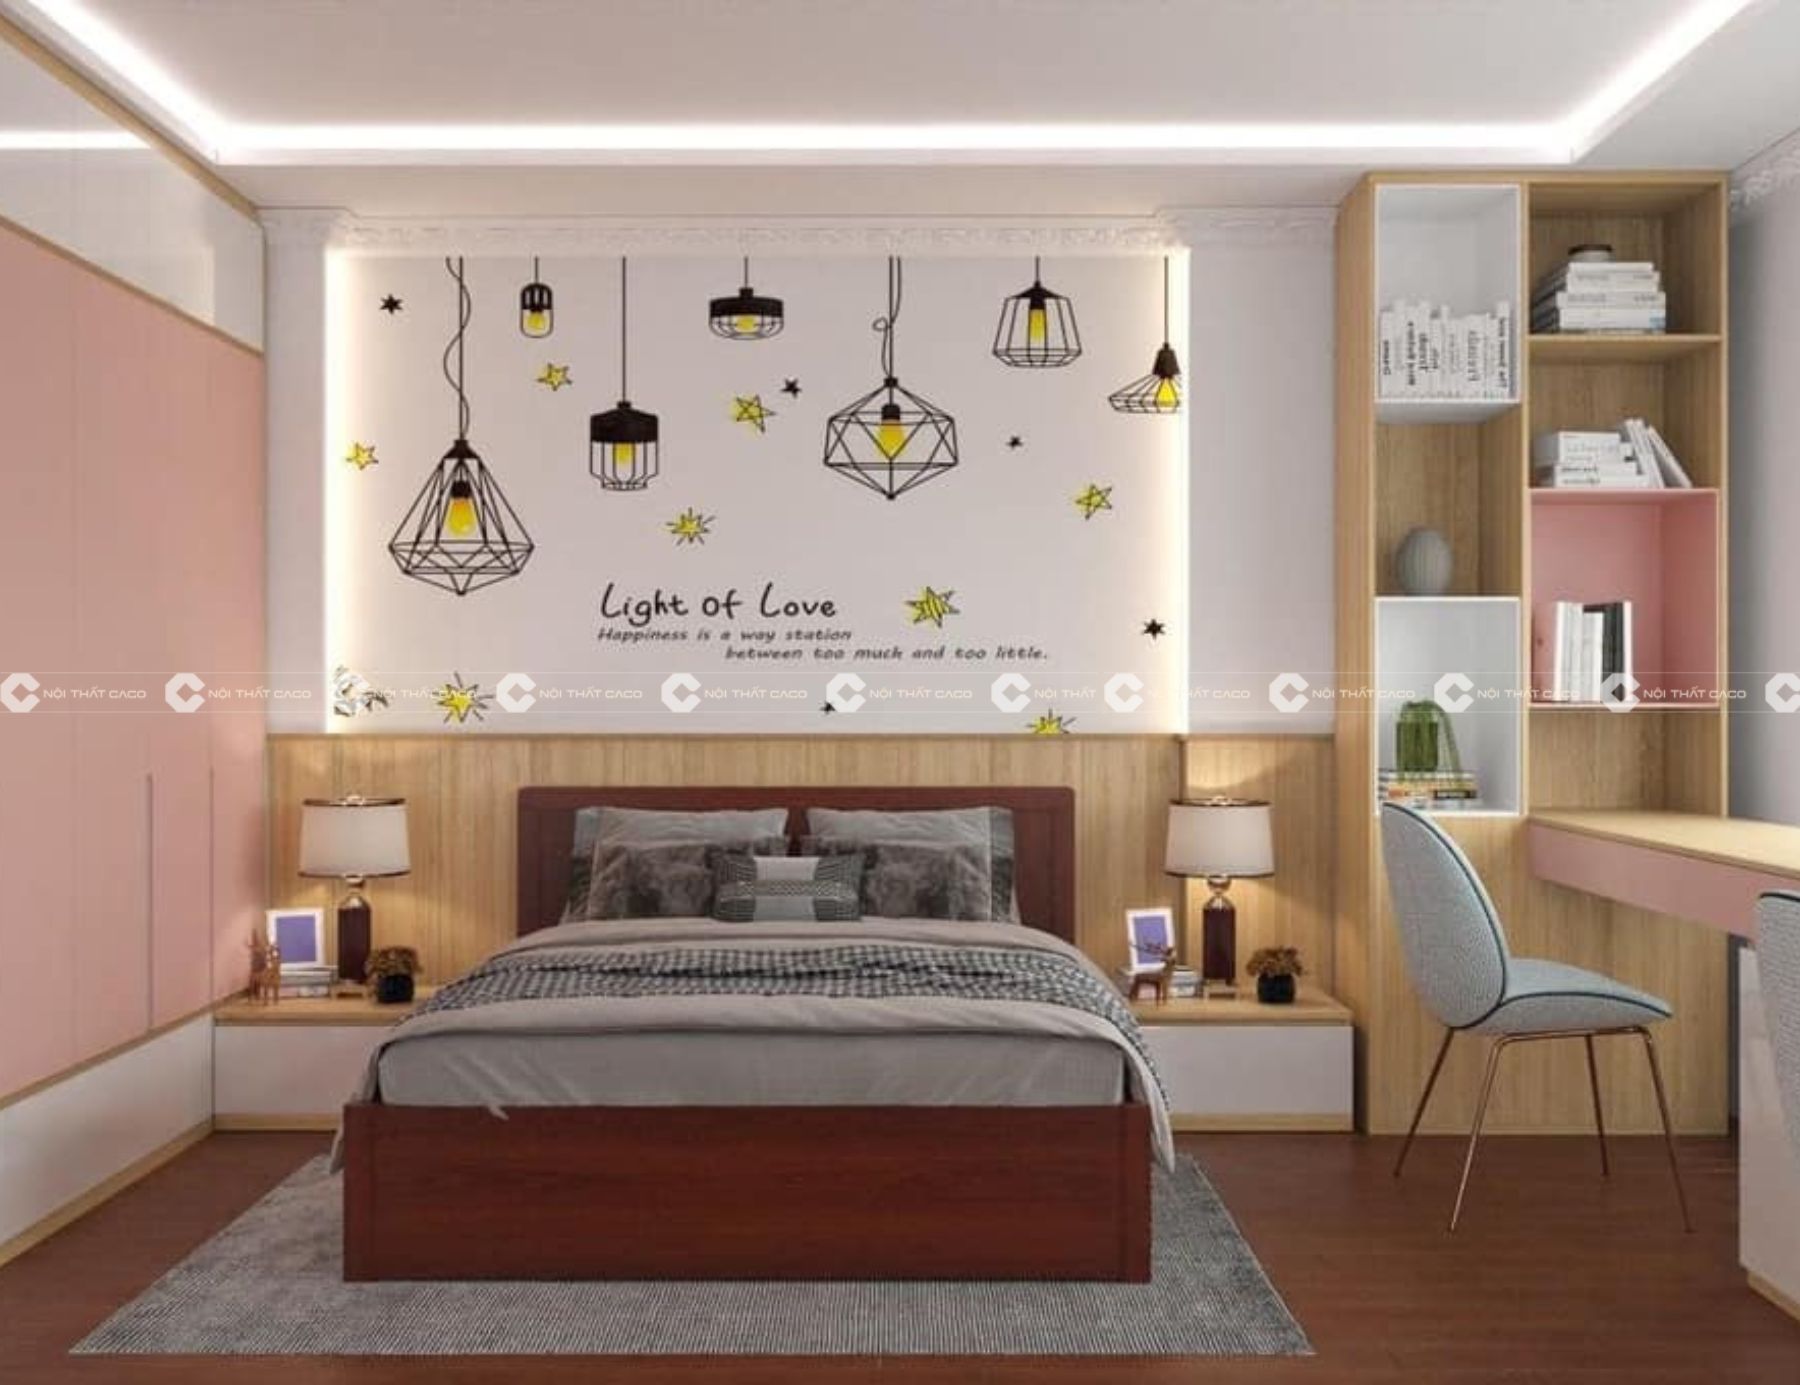 Thiết kế thi công nội thất phòng ngủ đẹp theo phong cách hiện đại tại Quận 7 1